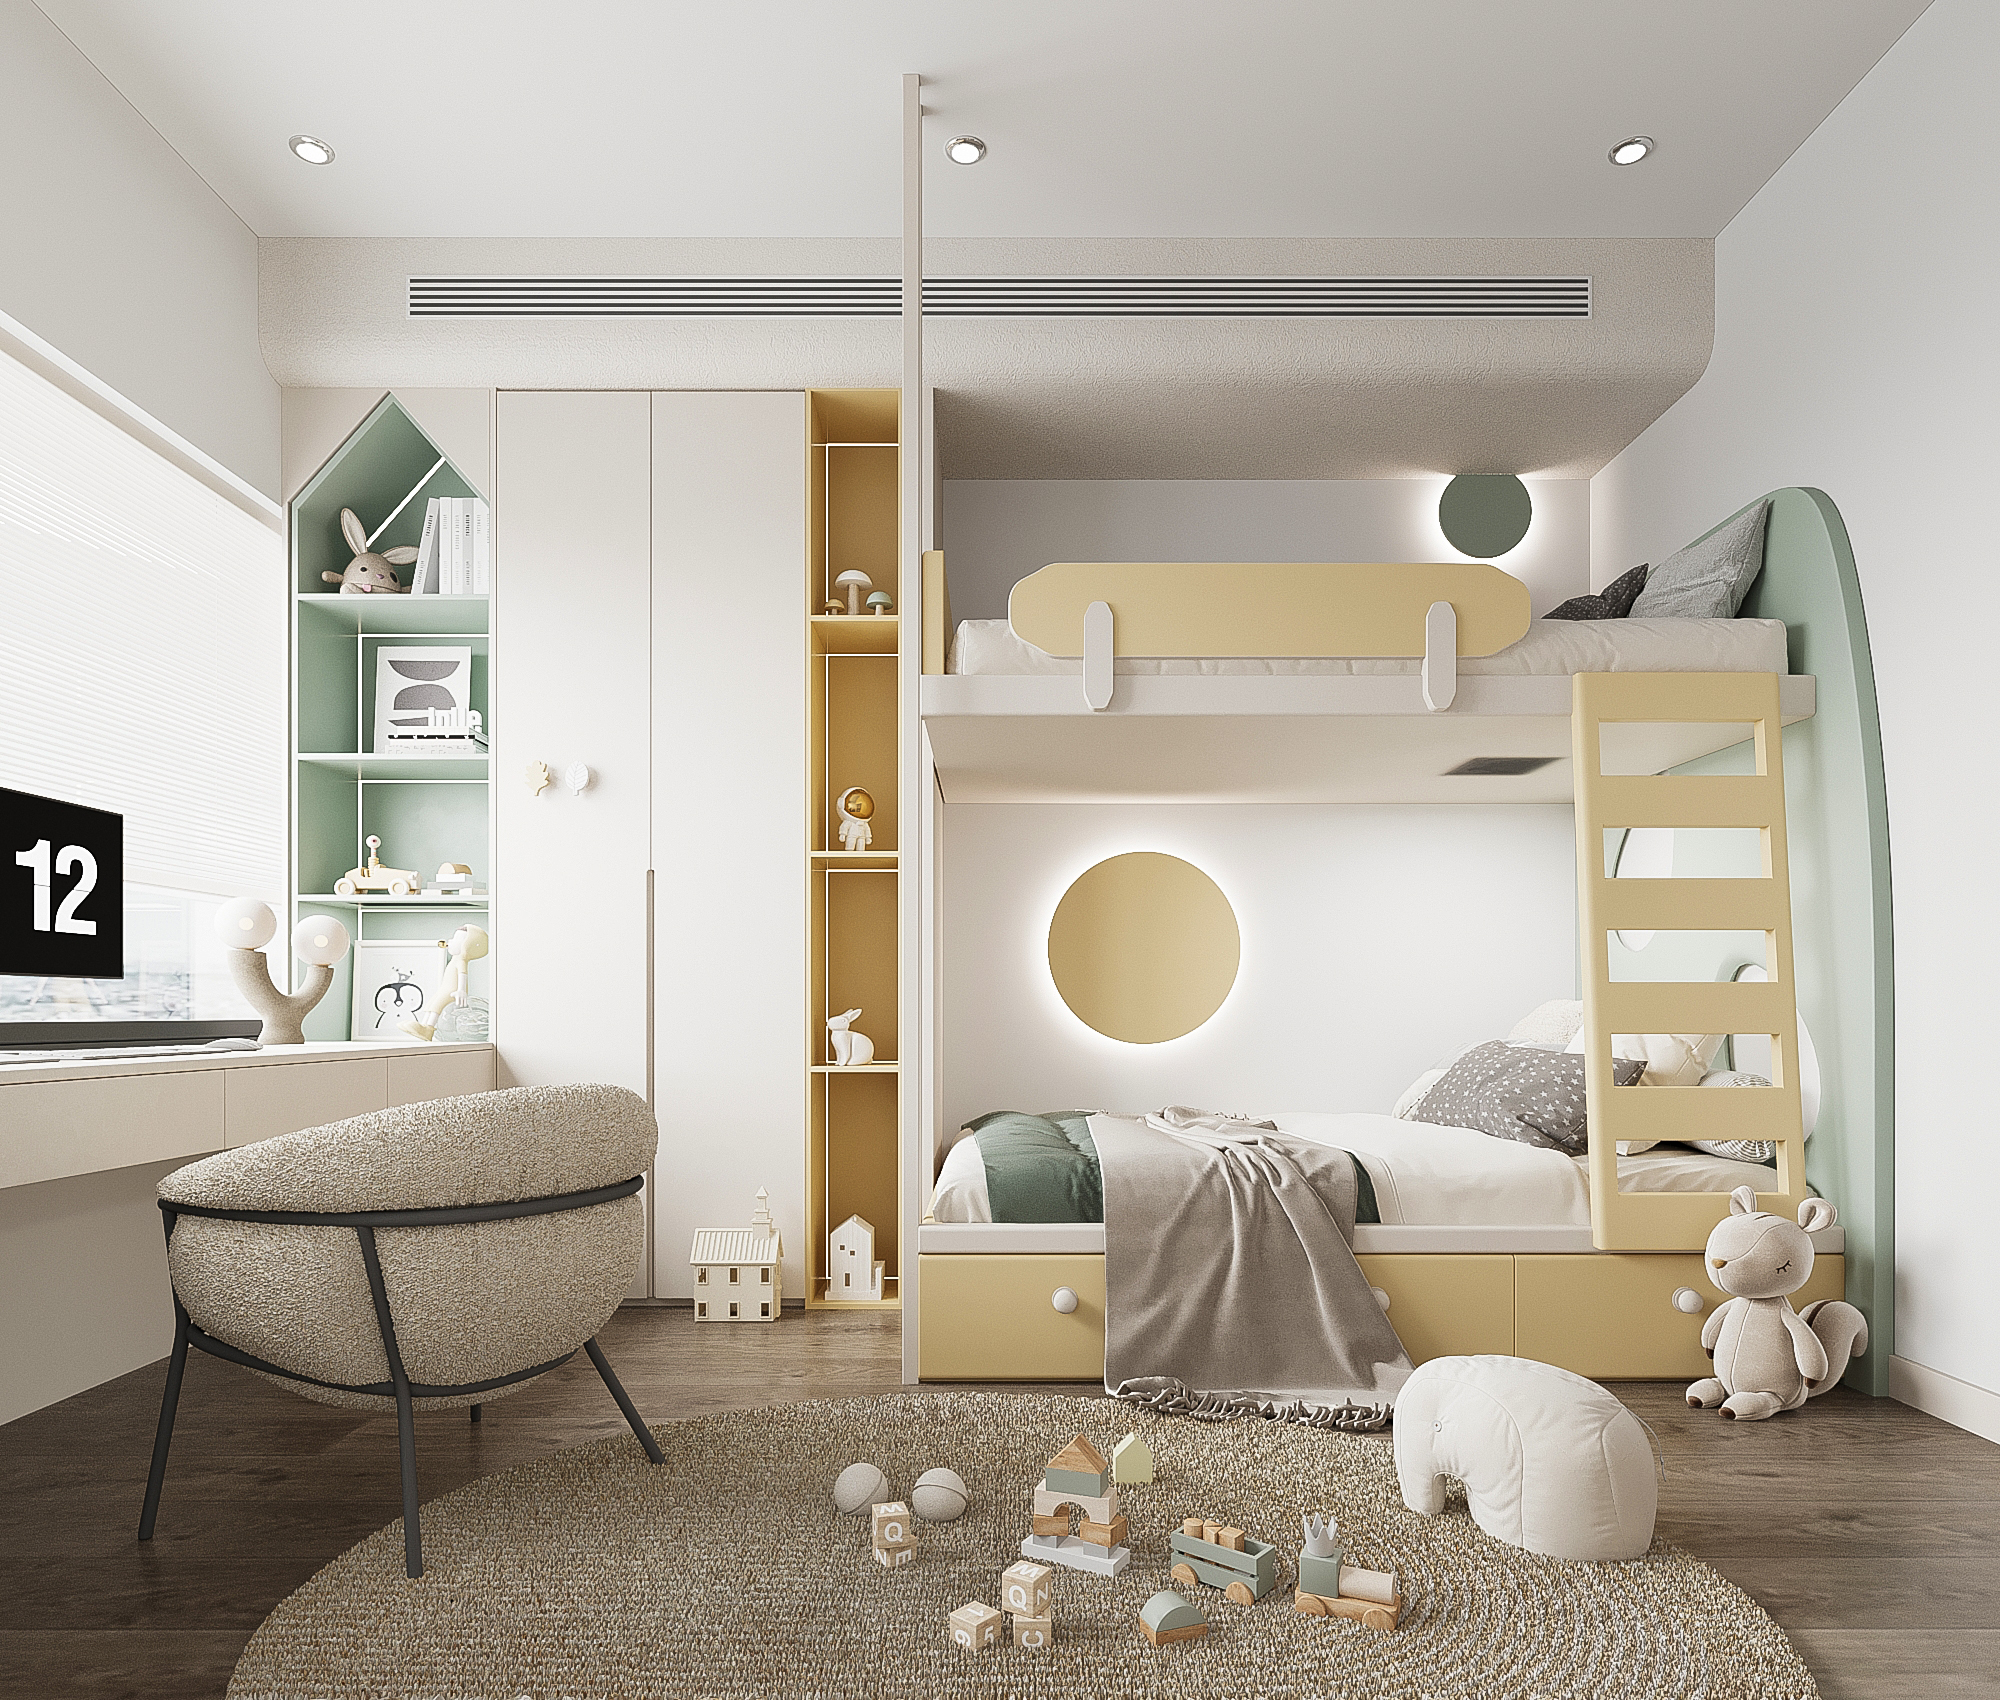 Phòng ngủ của 2 bé được thiết kế màu vàng chủ đạo tươi vui, năng động.